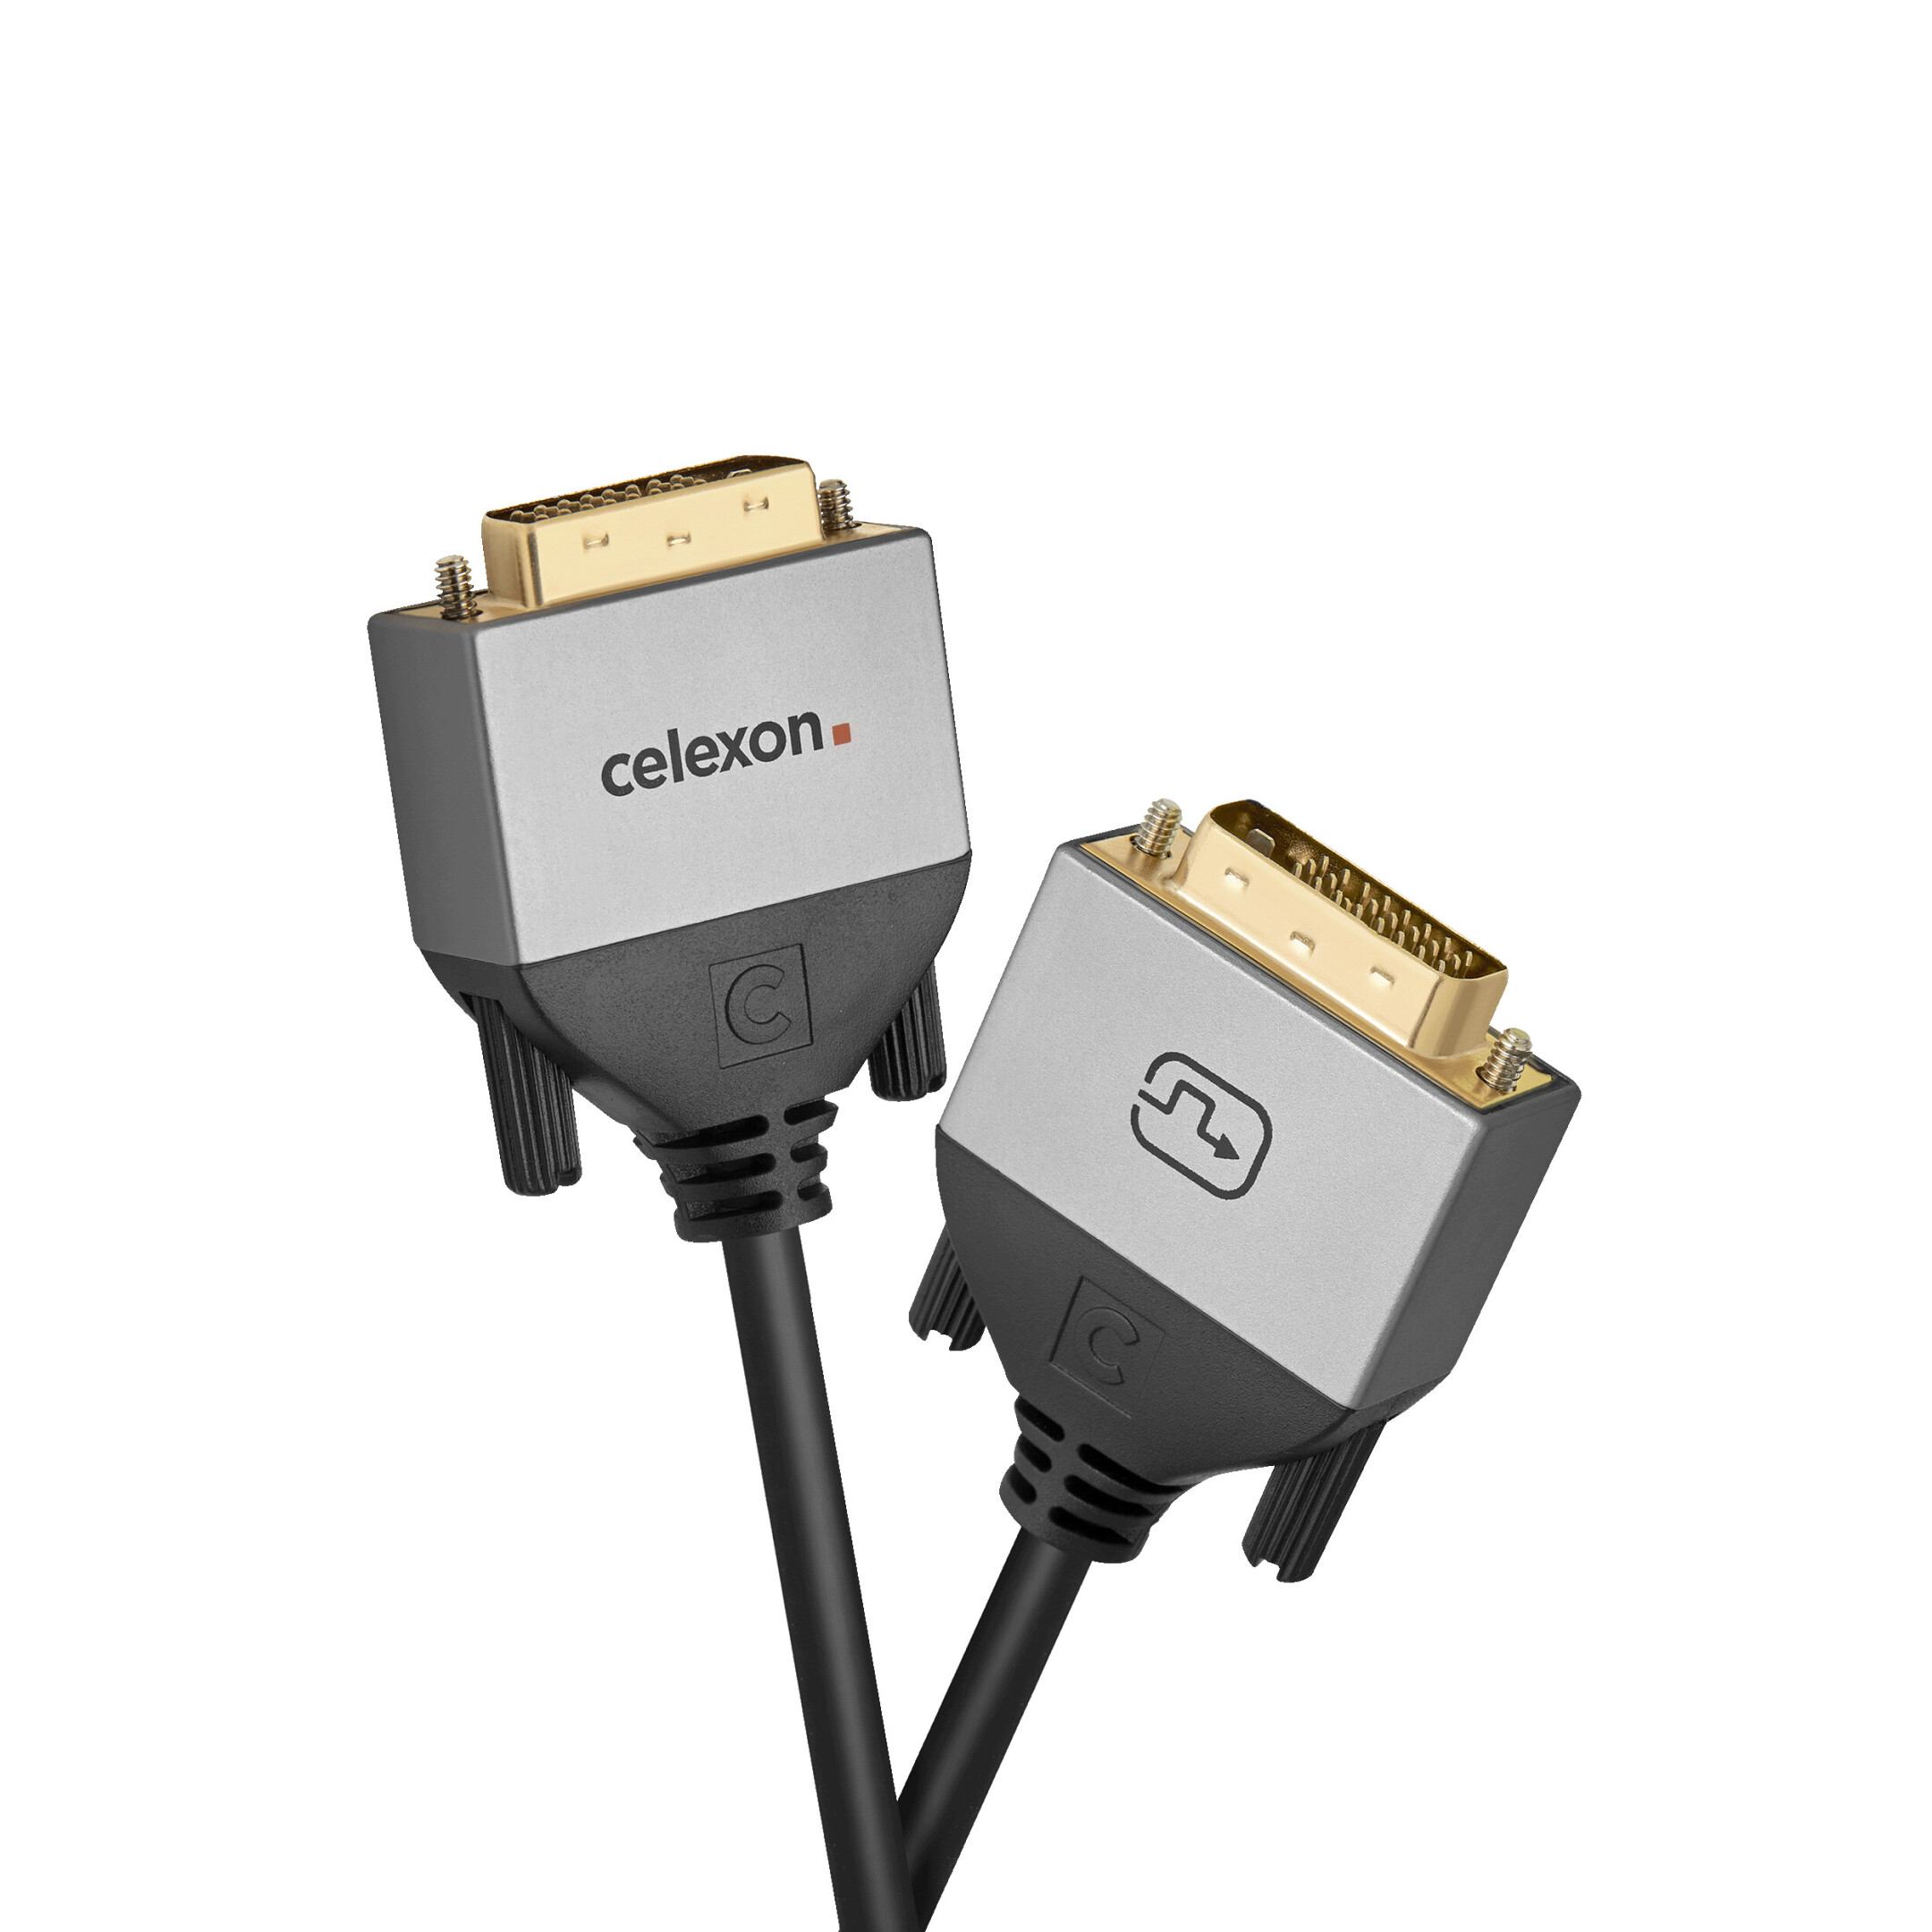 celexon-DVI-Dual-Link-Kabel-1-0m-Professional-Line